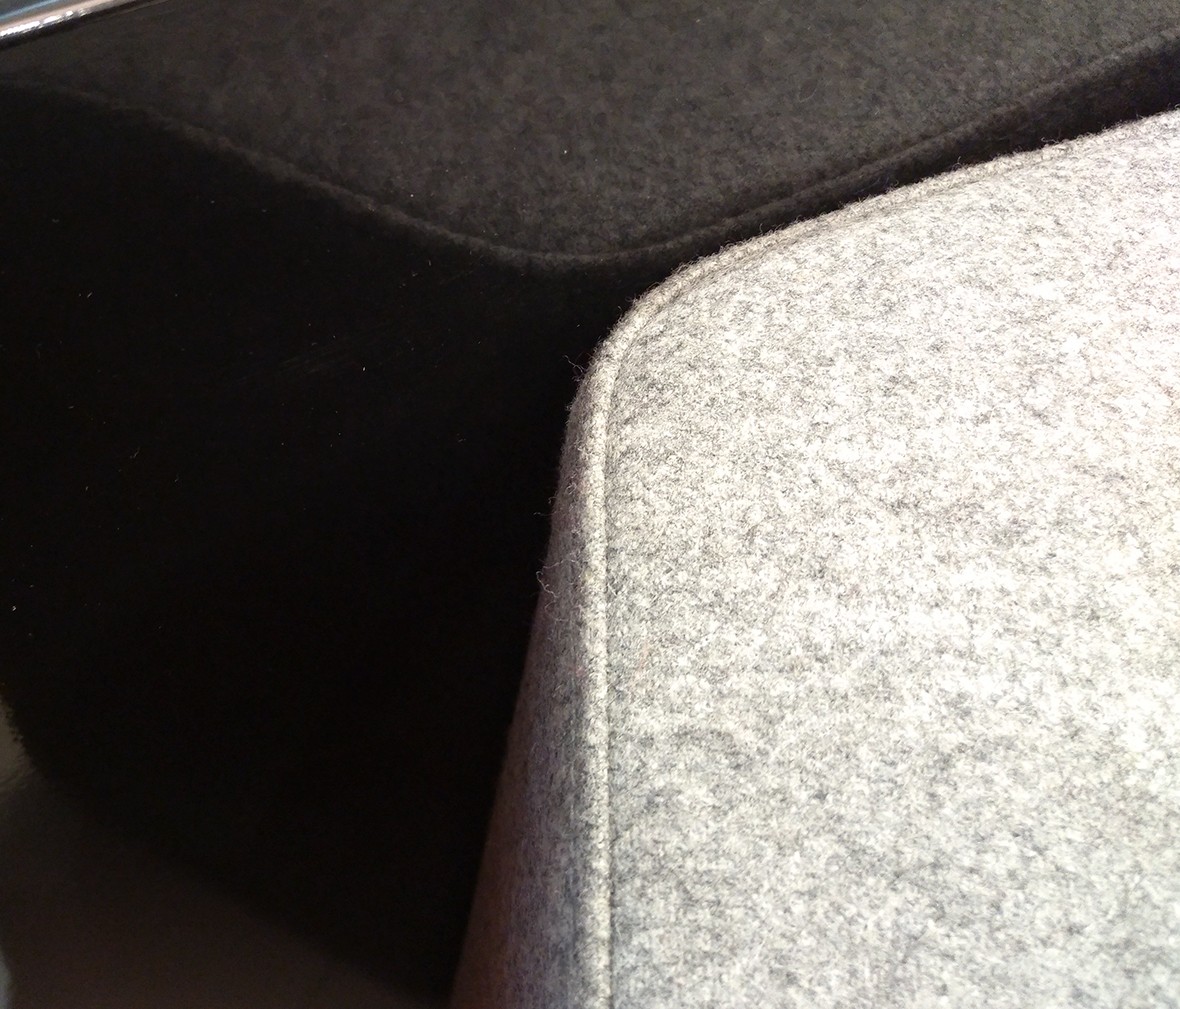 华澳 HAYZ-1型号休闲椅 现代简约布艺三人位椅子 情景细节实拍